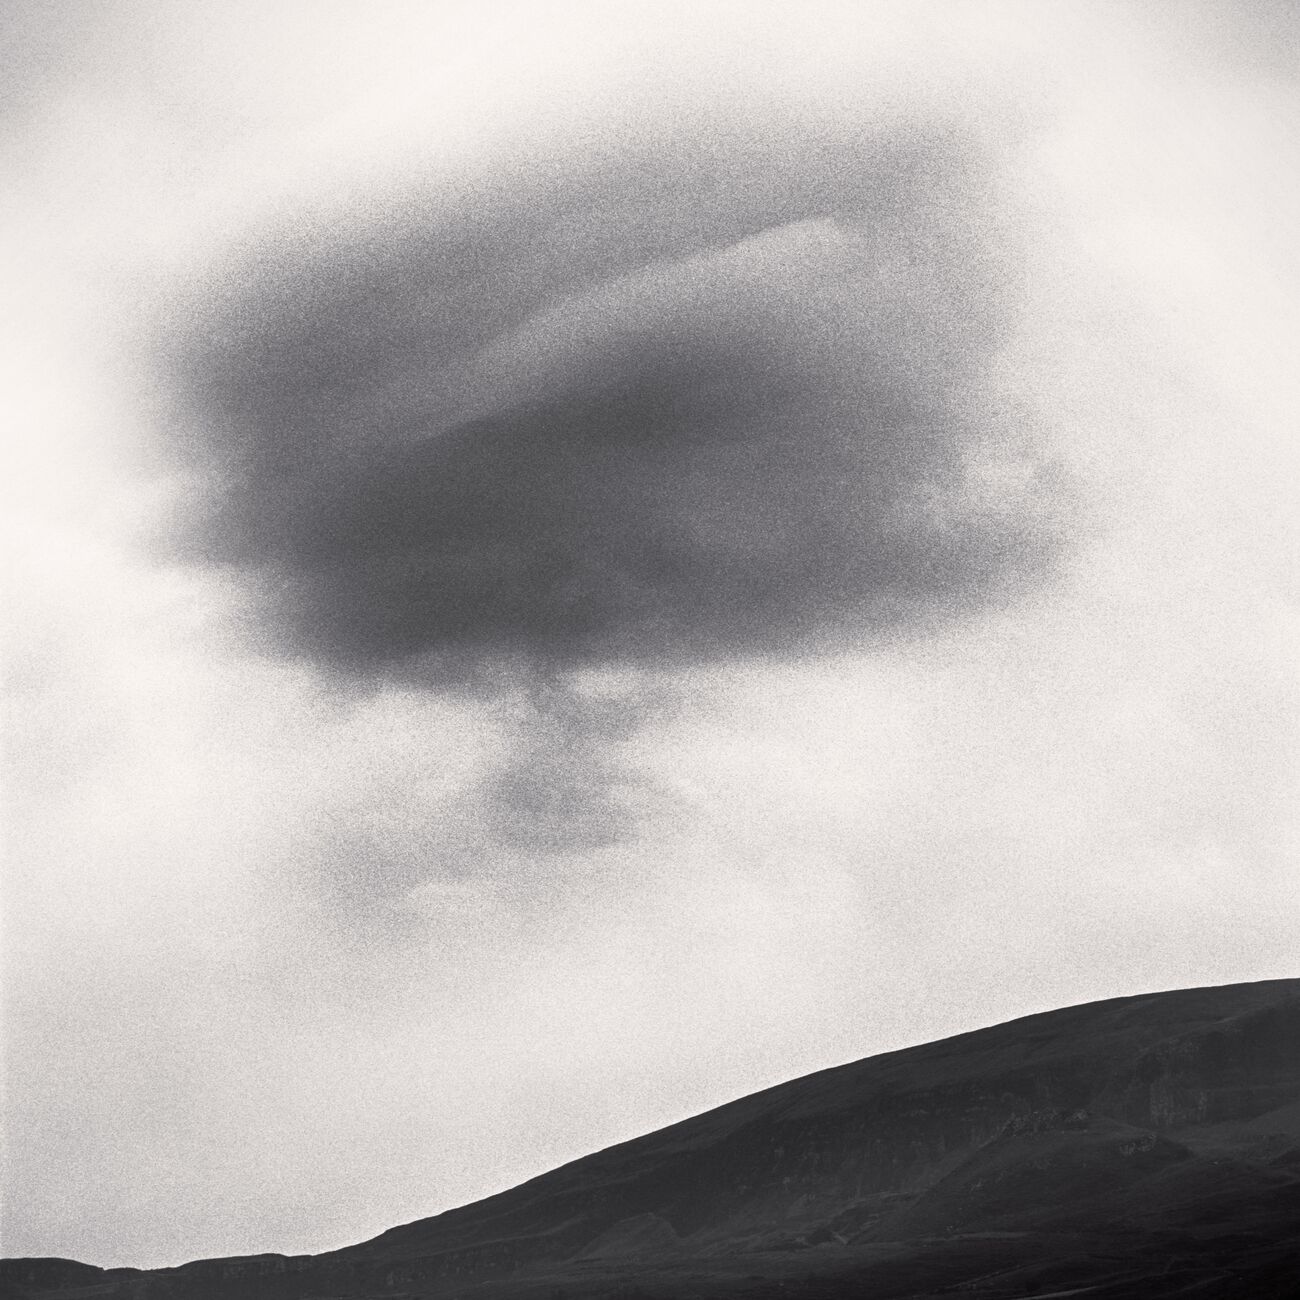 Dark Cloud, Staffin Coast, Scotland. August 2022. Ref-11575 - Denis Olivier Photography